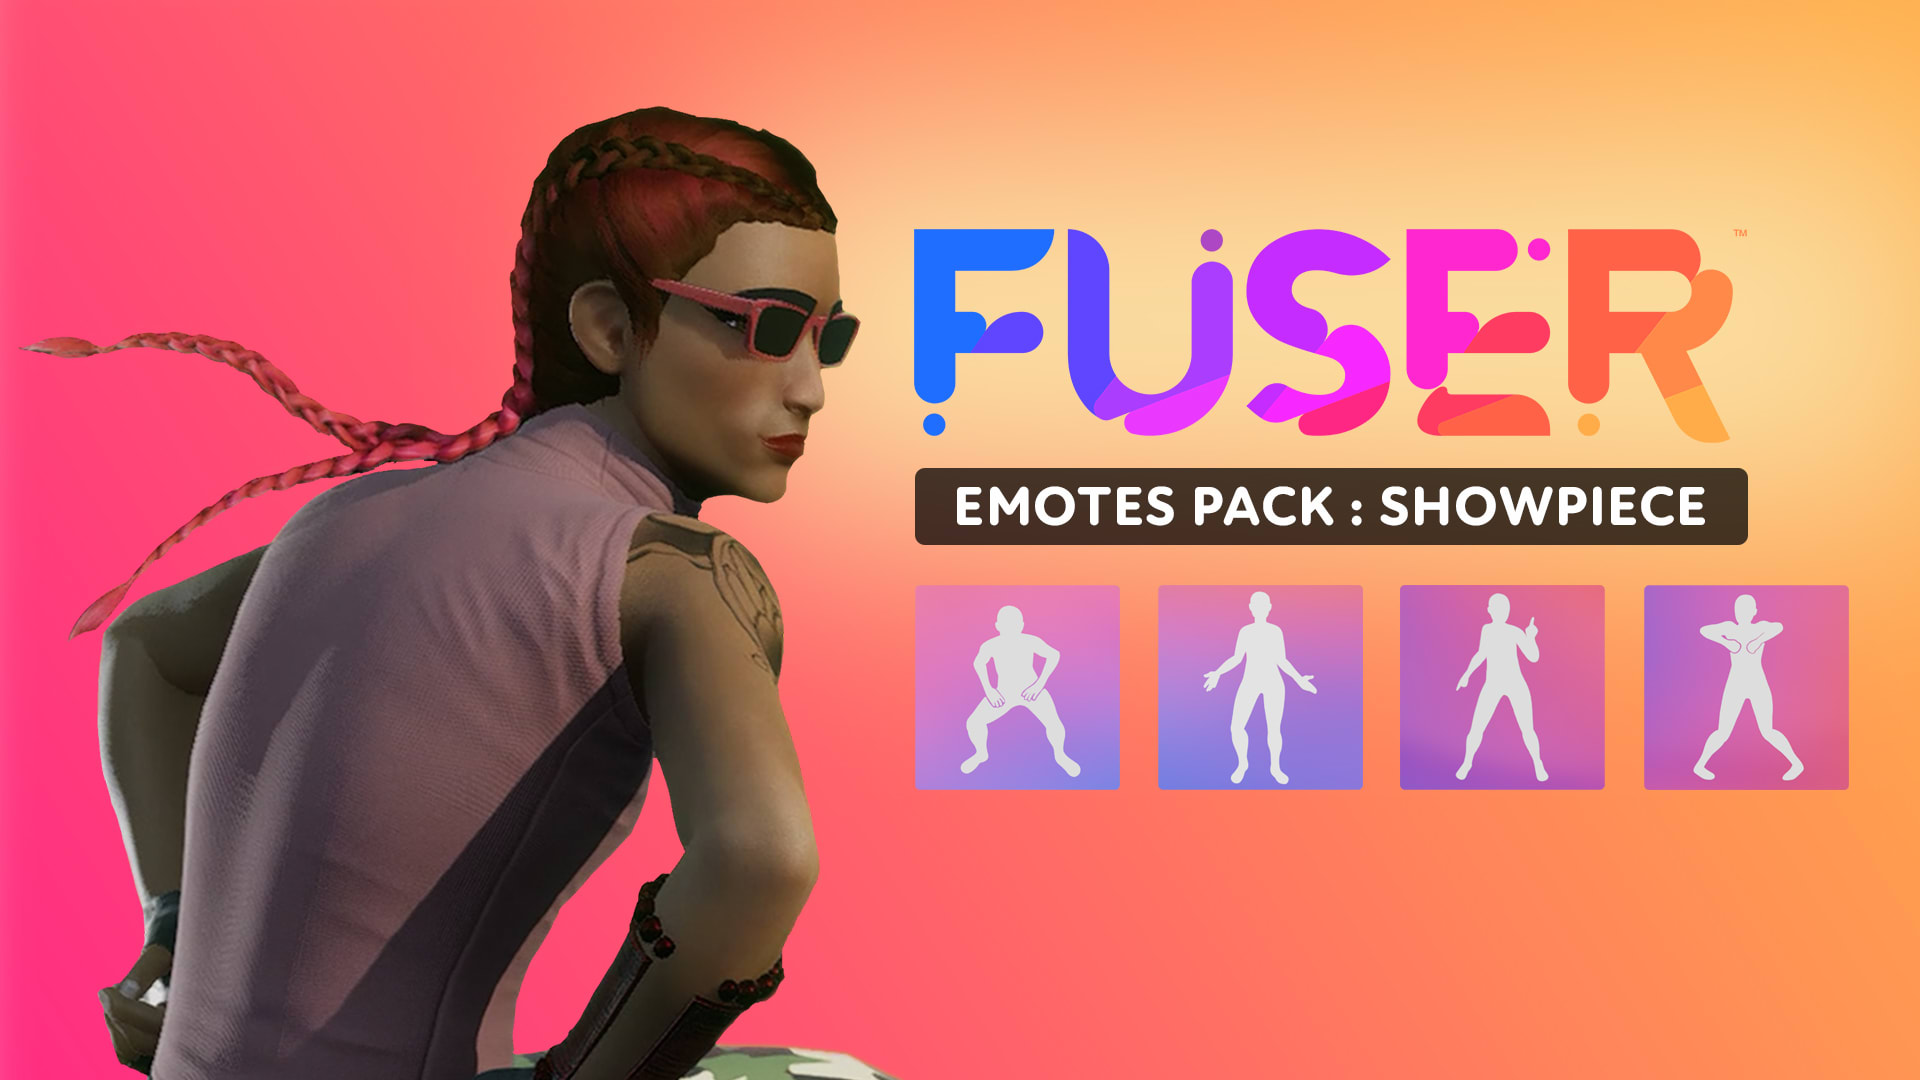 Emotes Pack: Showpiece